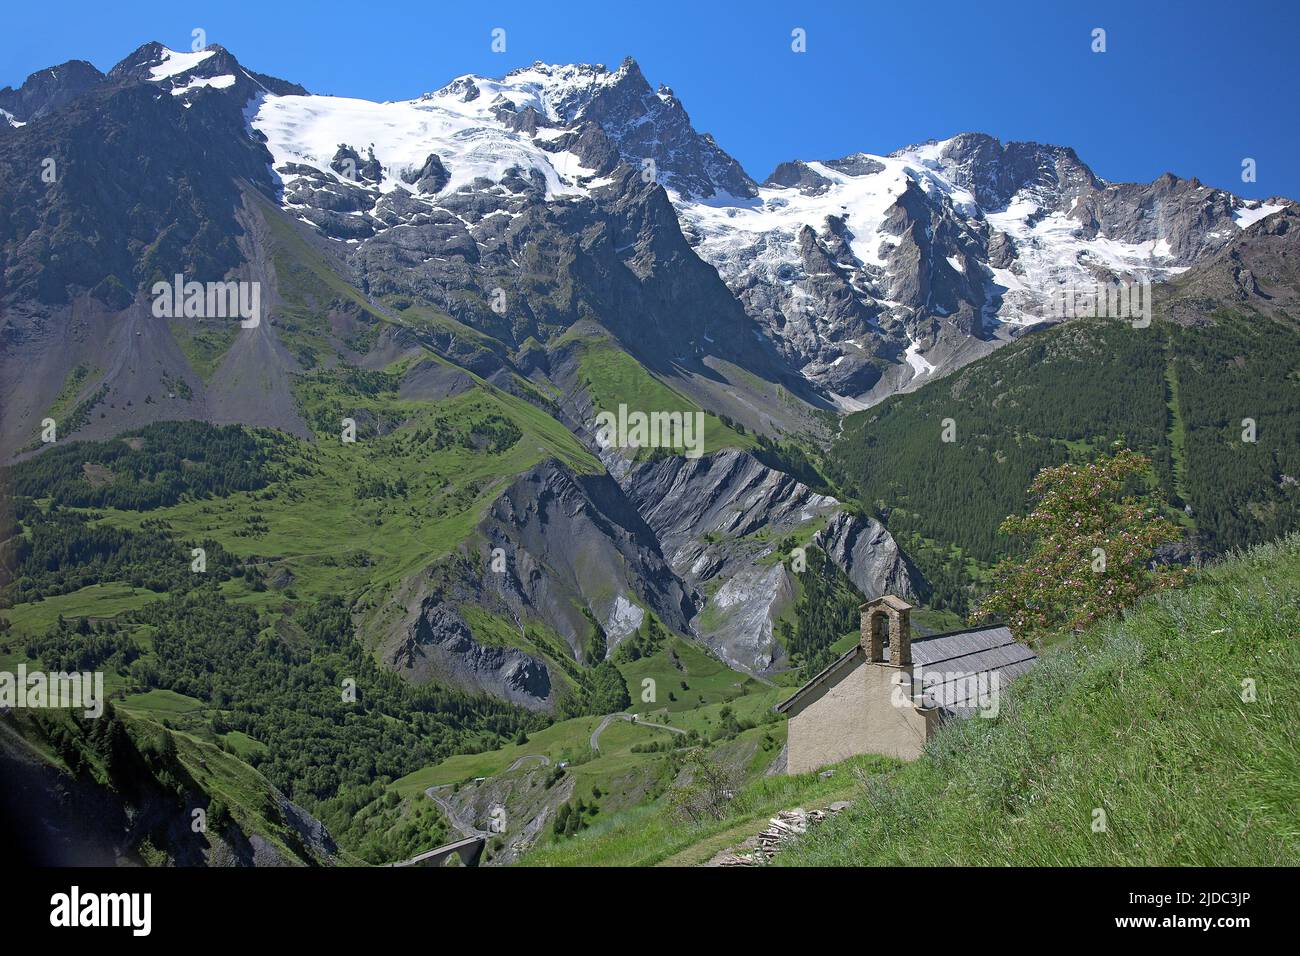 France, Hautes-Alpes La Grave, Meije massif, Ecrins National Park, mountain chapel Stock Photo